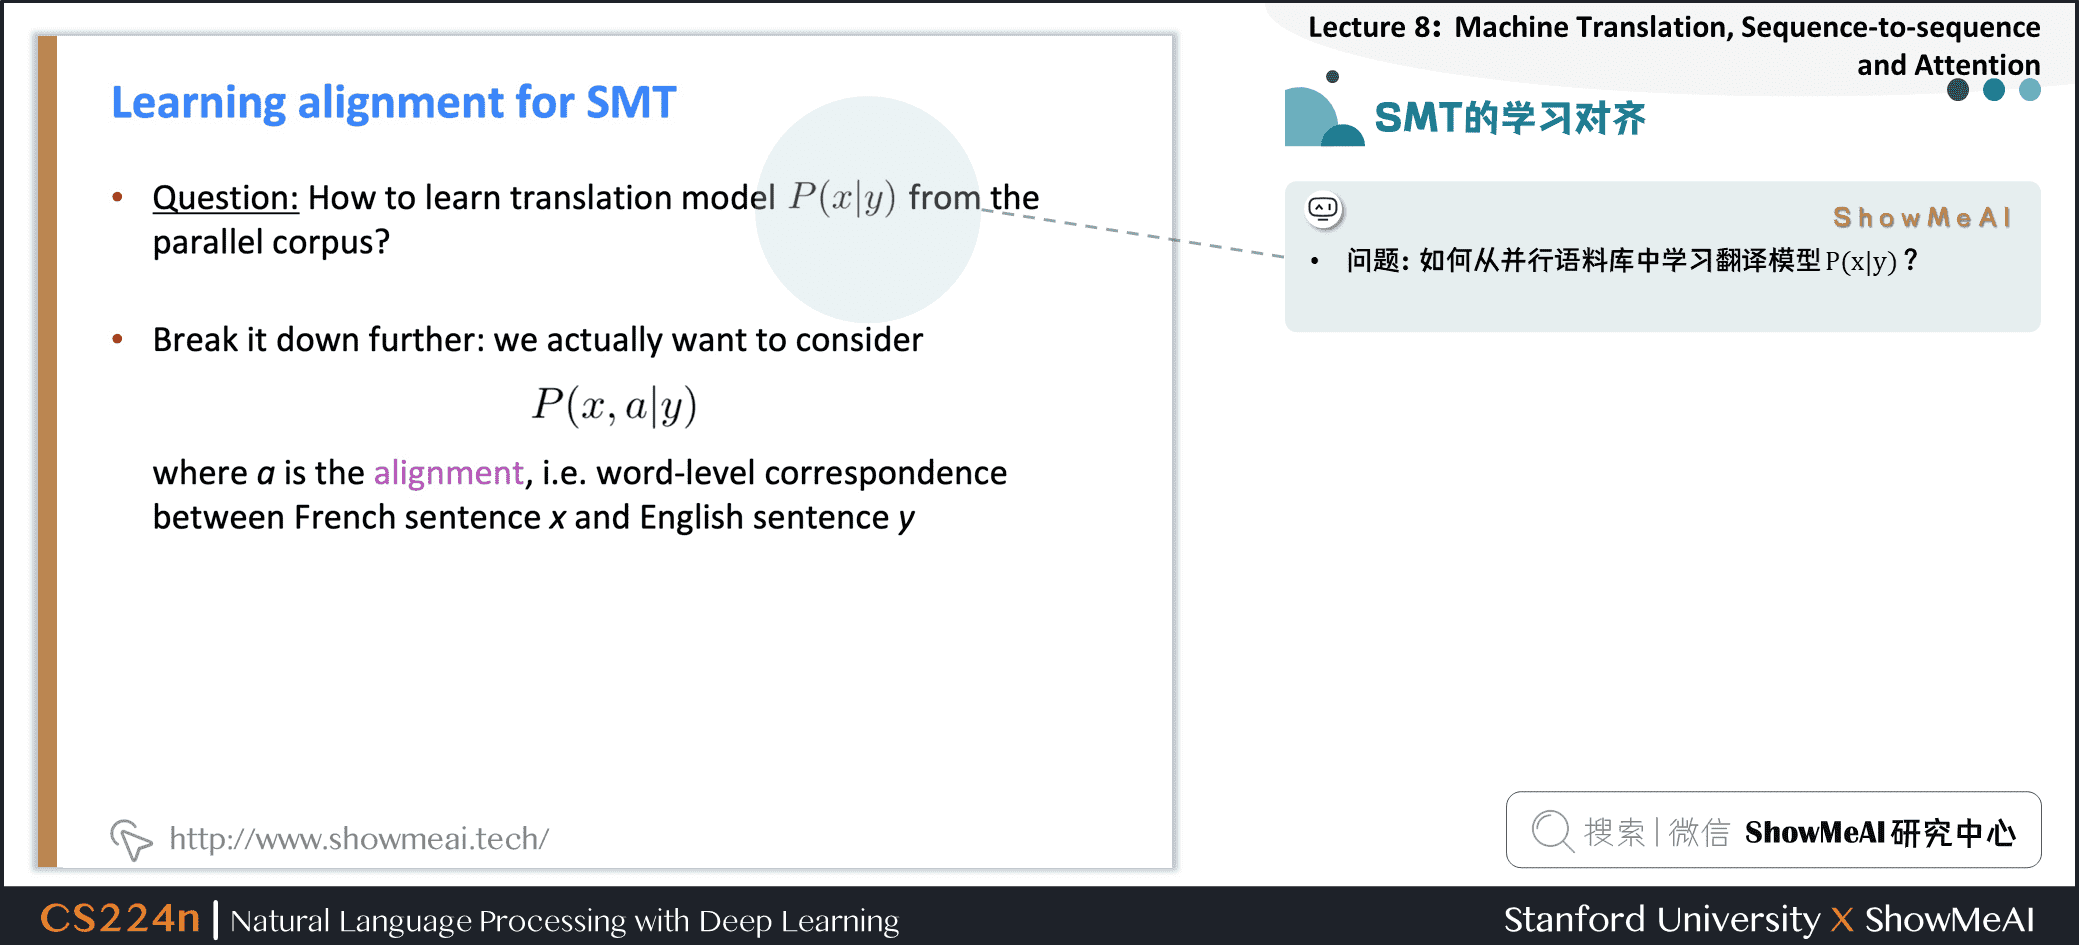 SMT的学习对齐